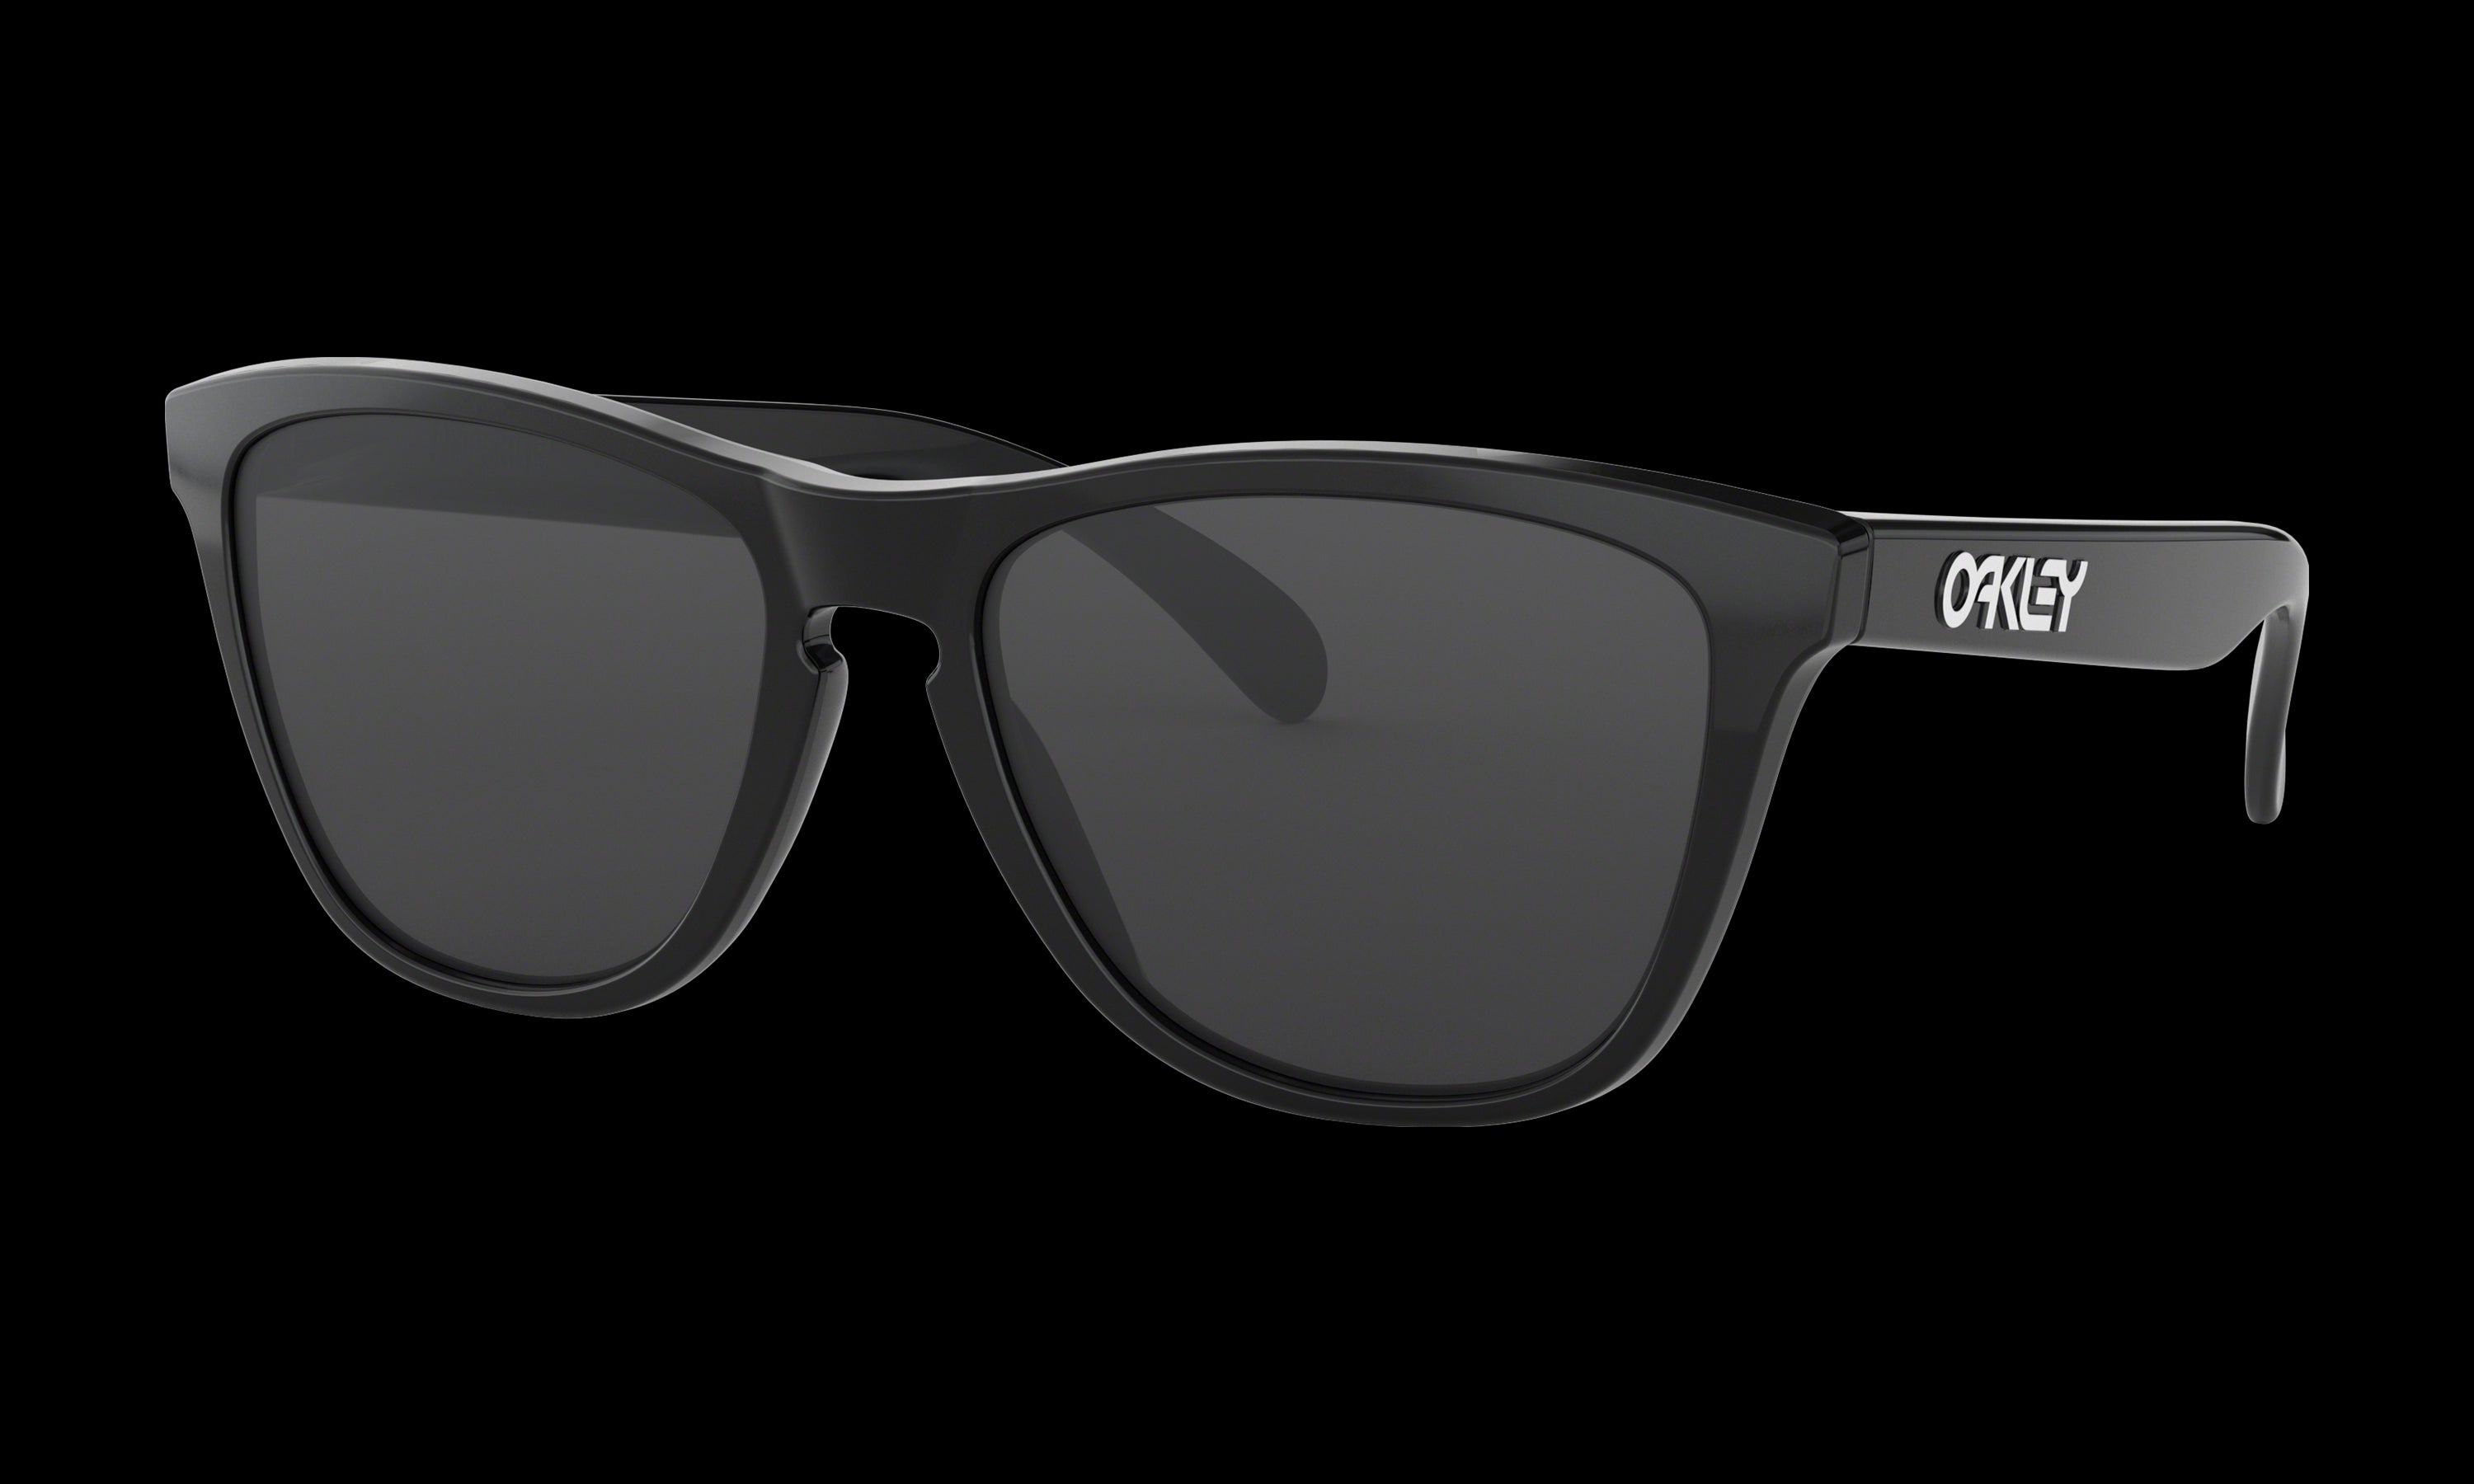 Women's Oakley Frogskins Sunglasses in Polished Black Grey